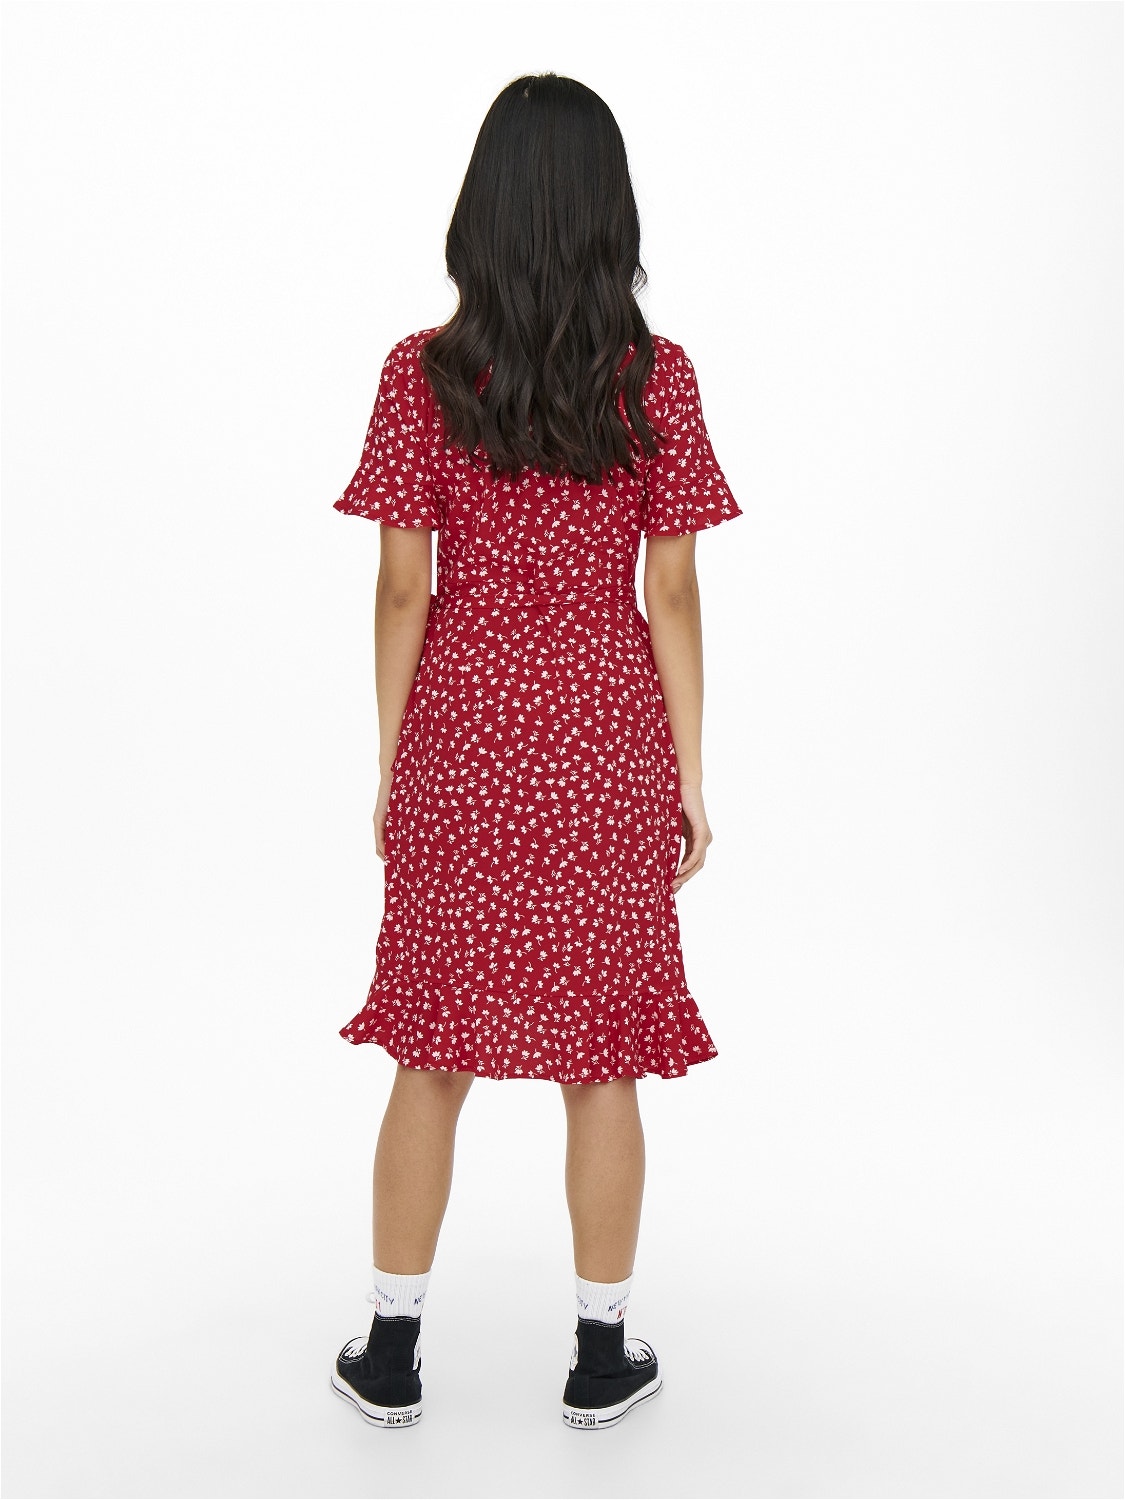 ONLY Normal geschnitten V-Ausschnitt Kurzes Kleid -Mars Red - 15206407